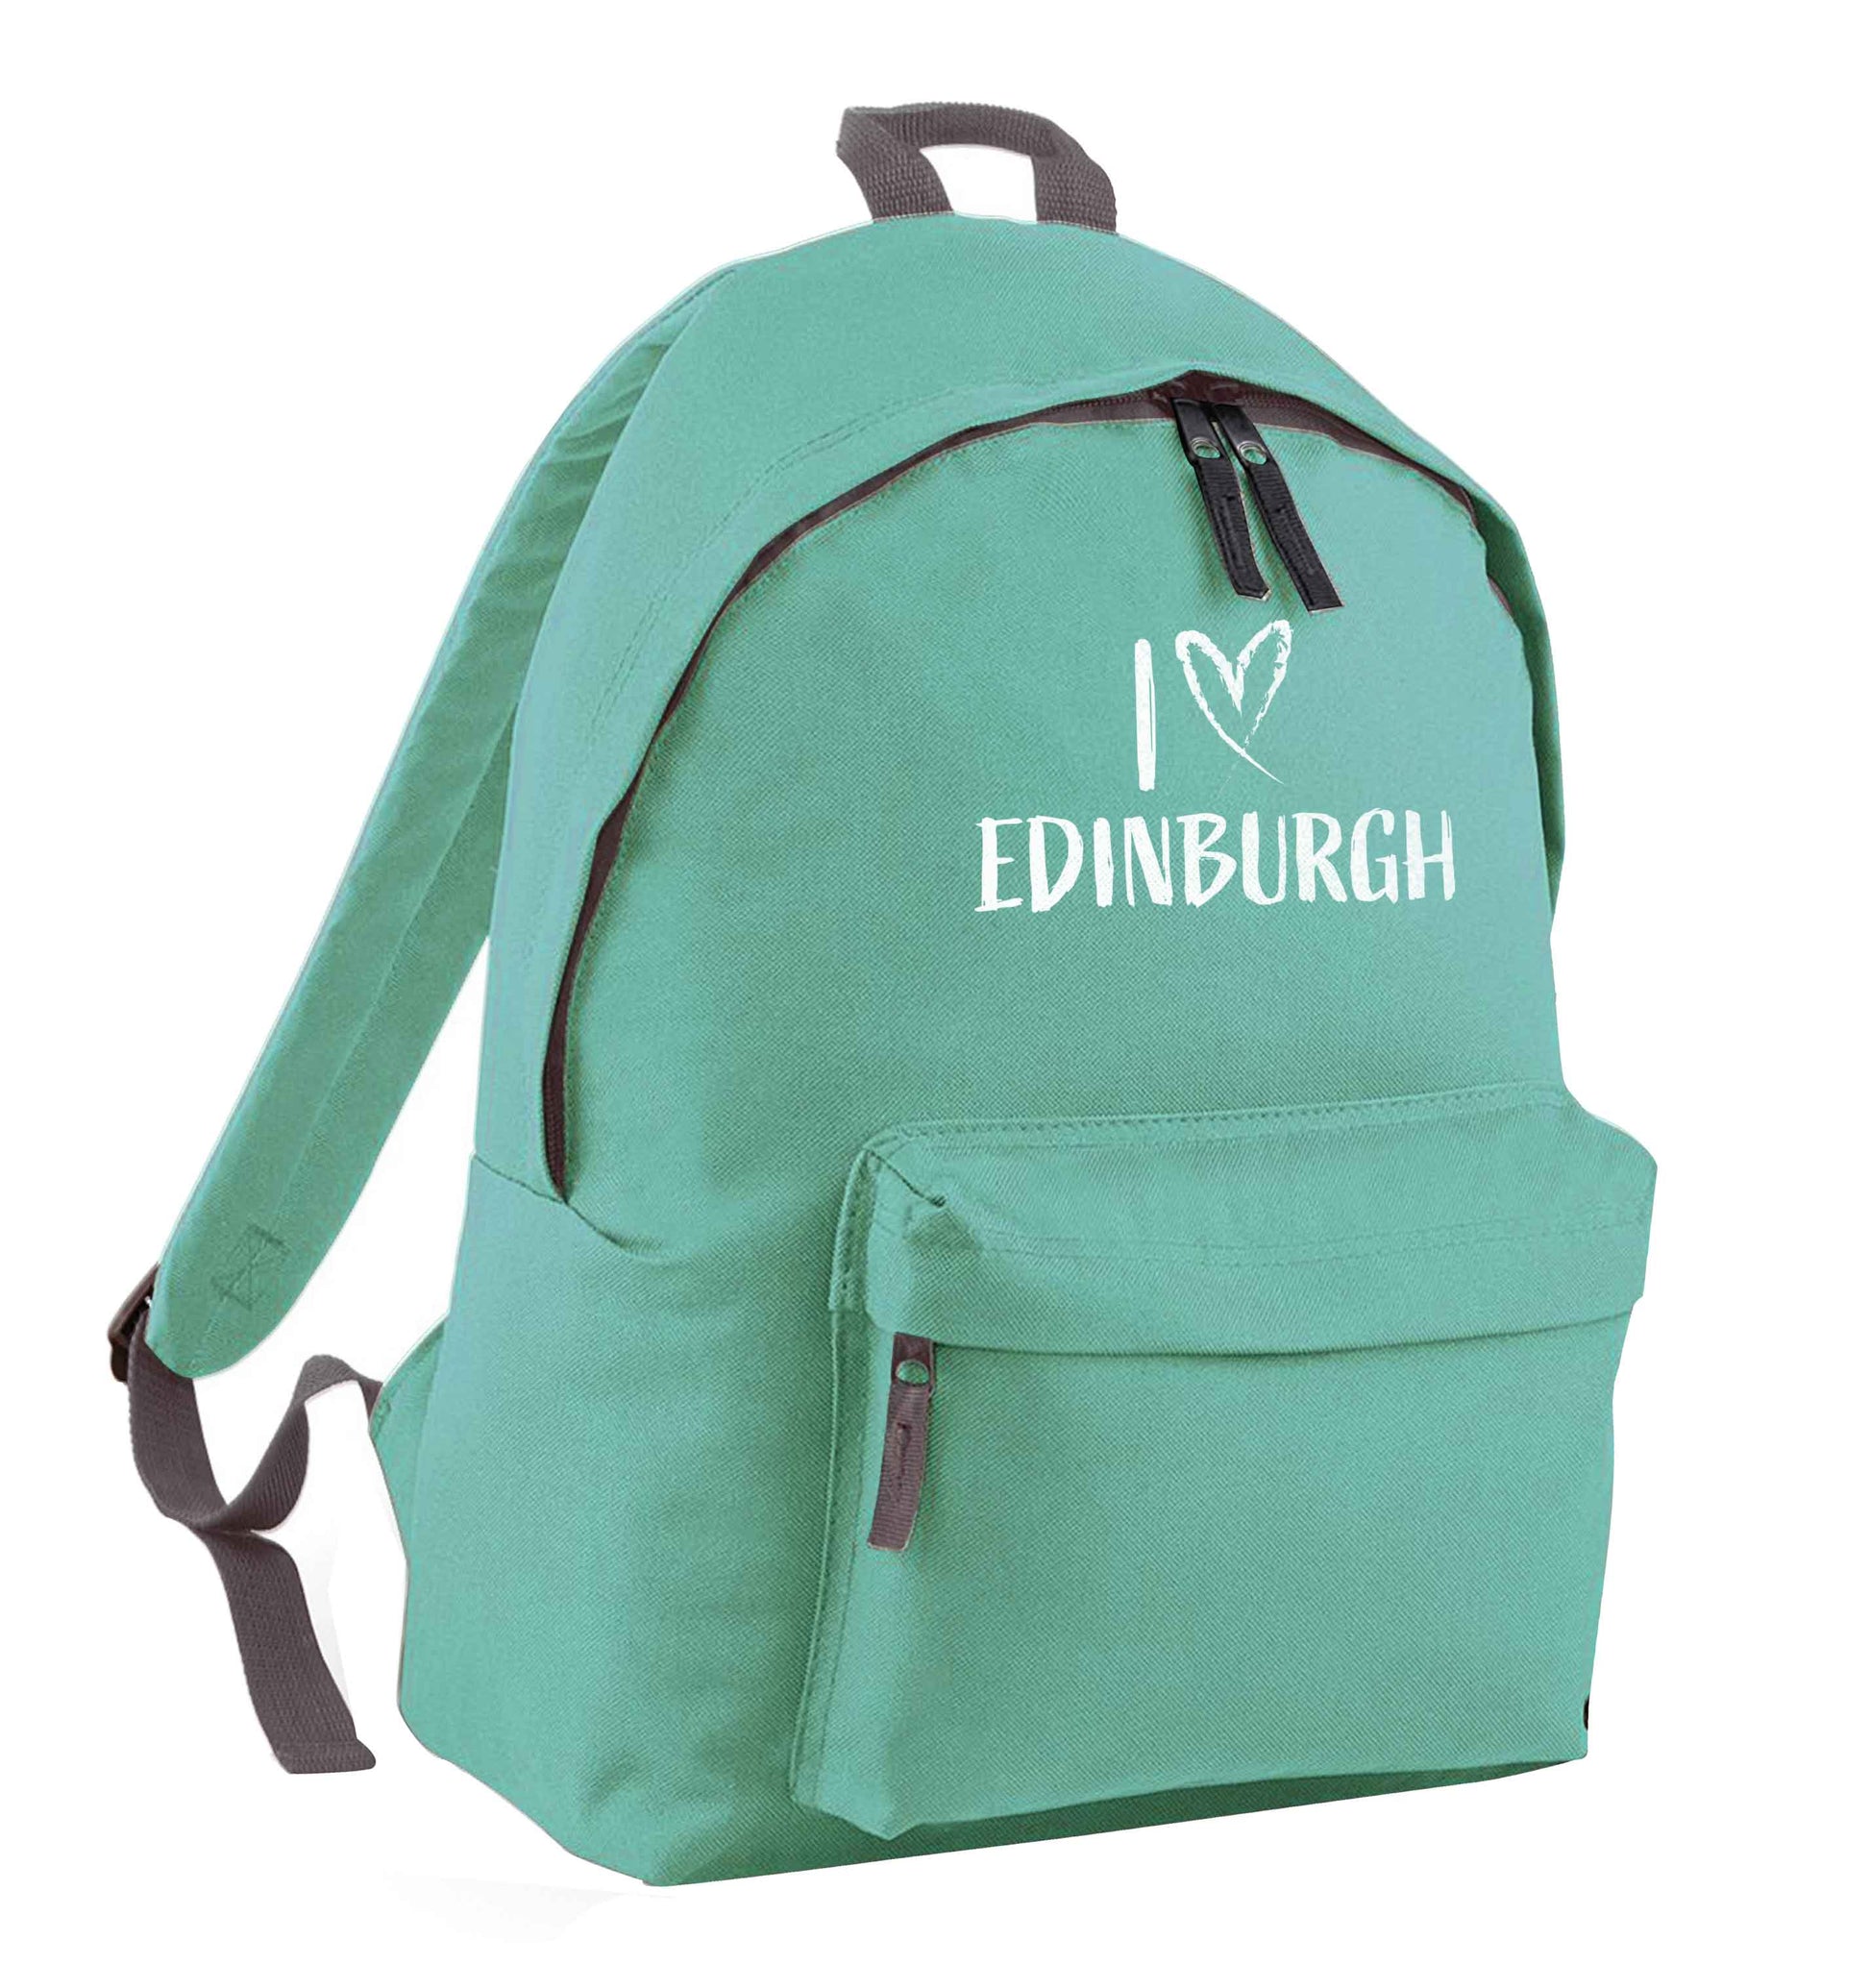 I love Edinburgh mint adults backpack